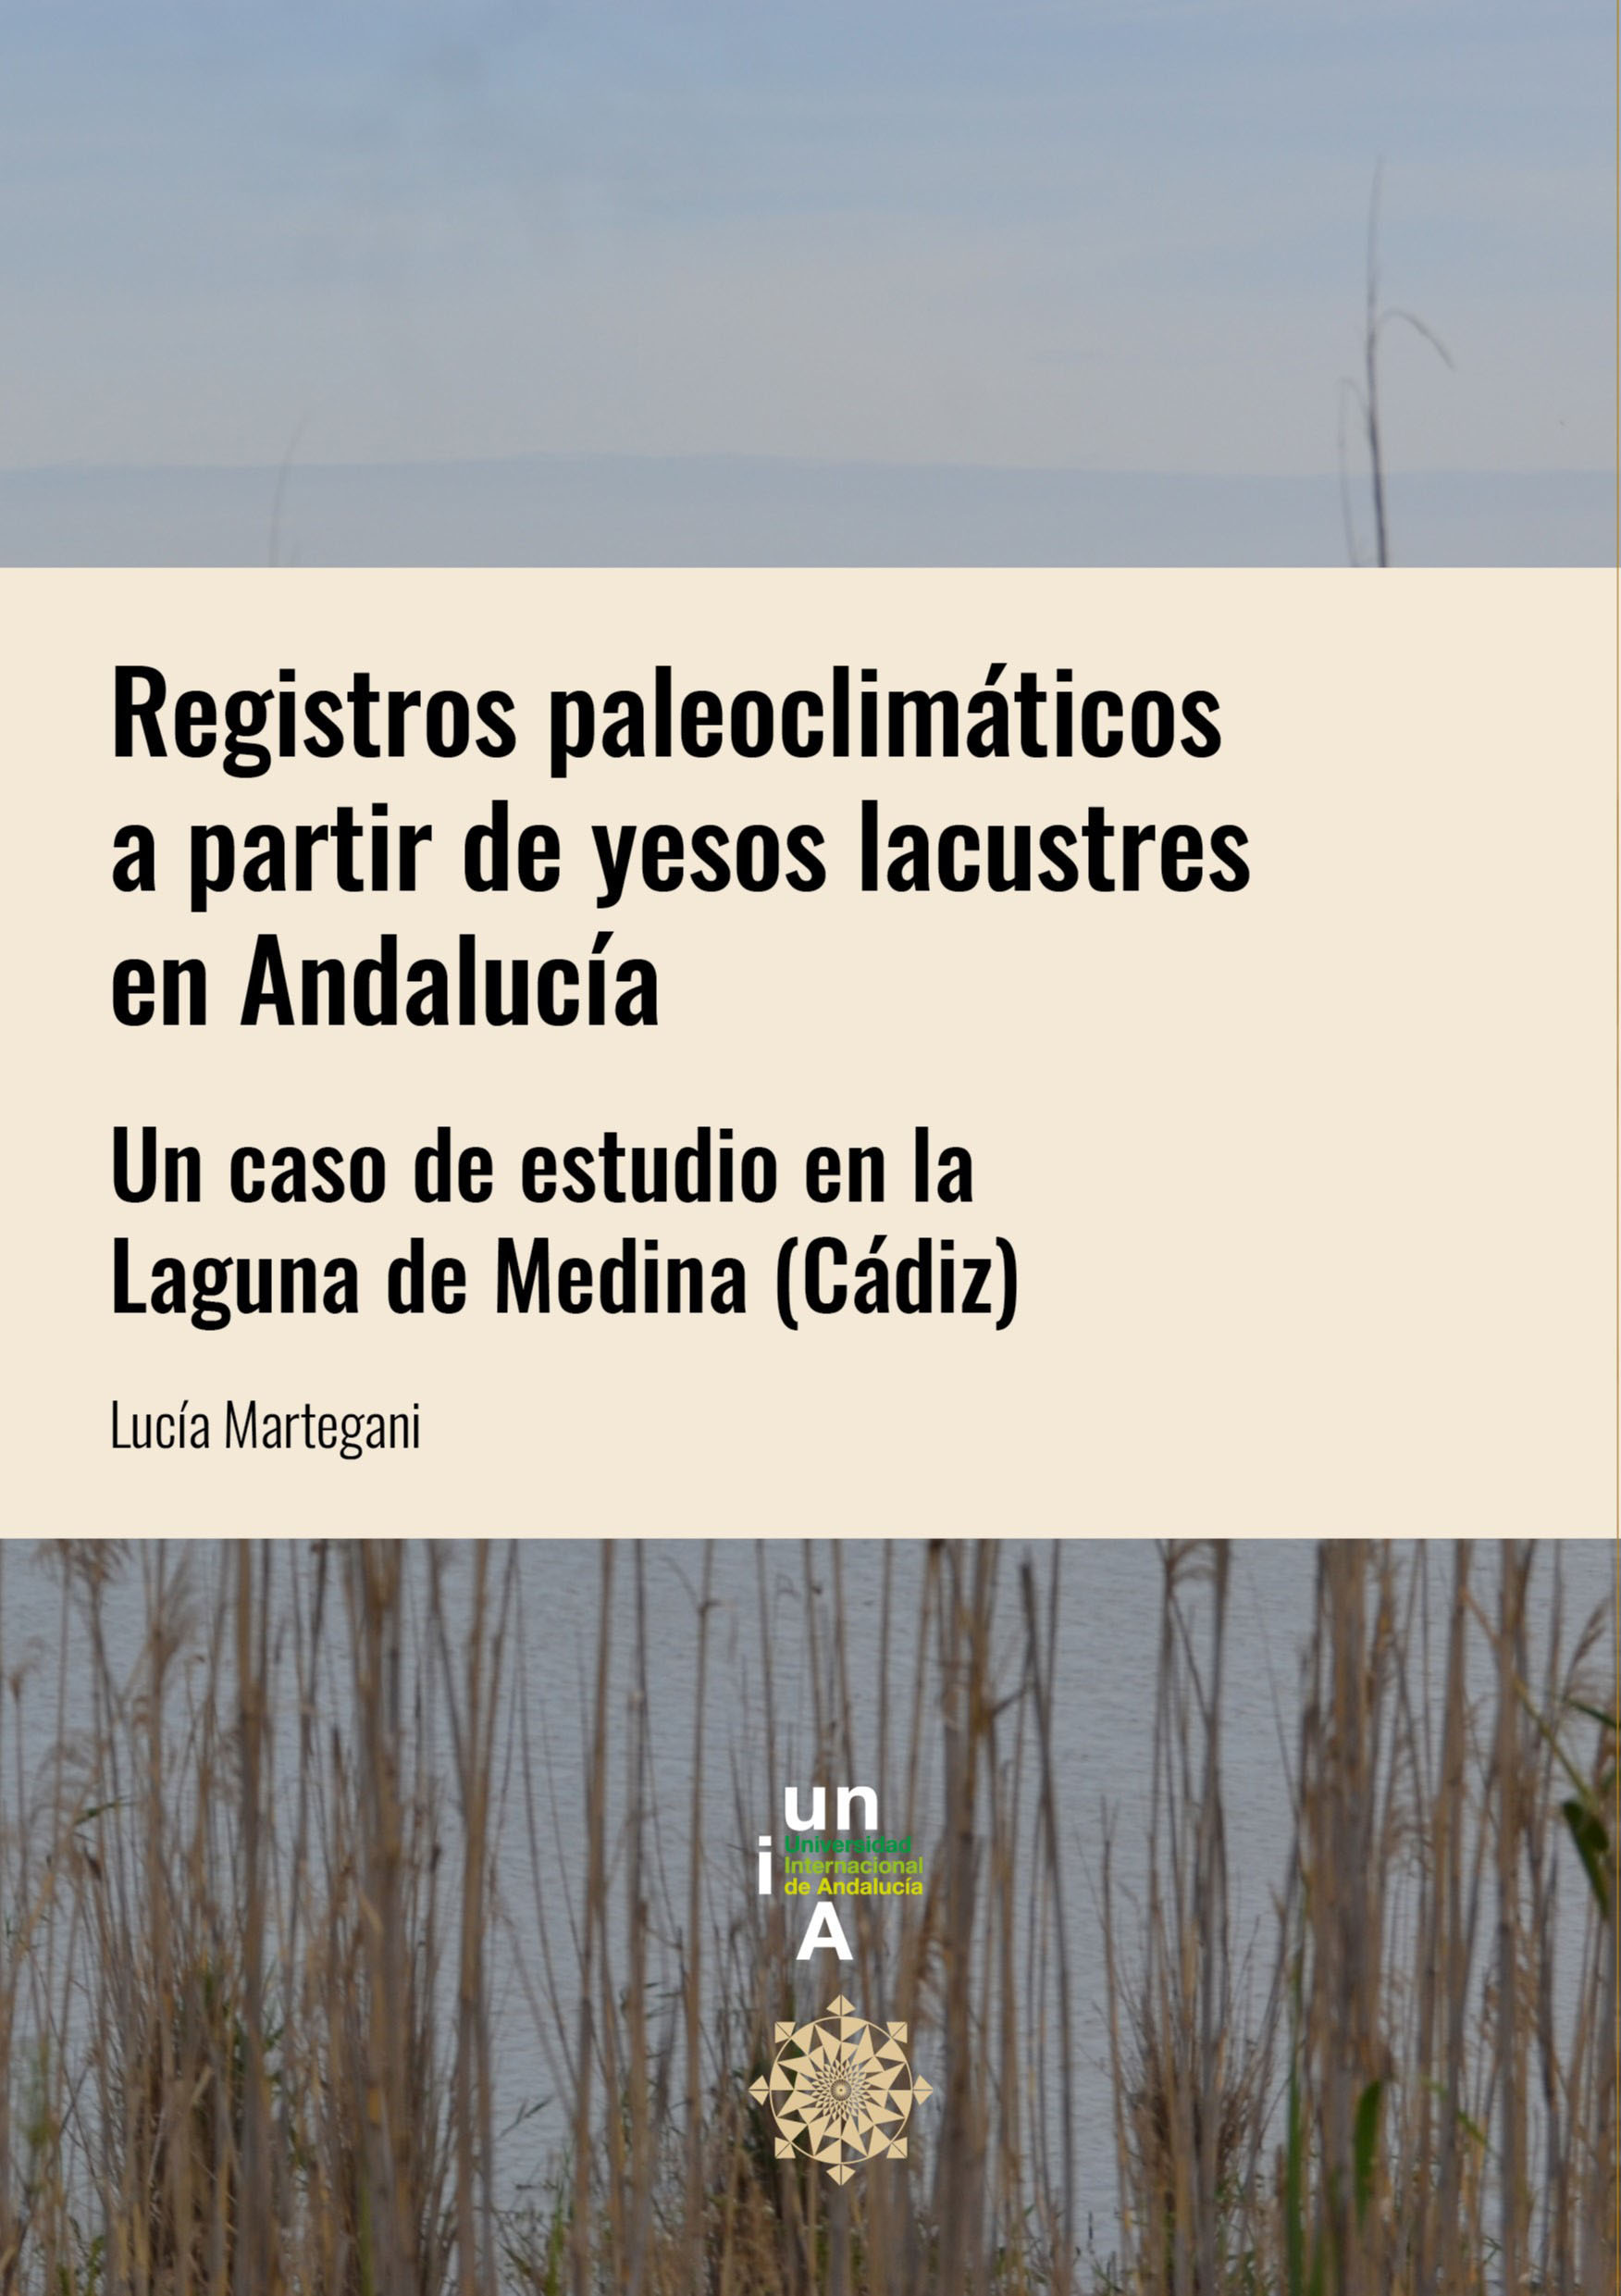 Imagen de portada del libro Registros paleoclimáticos a partir de yesos lacustres en Andalucía